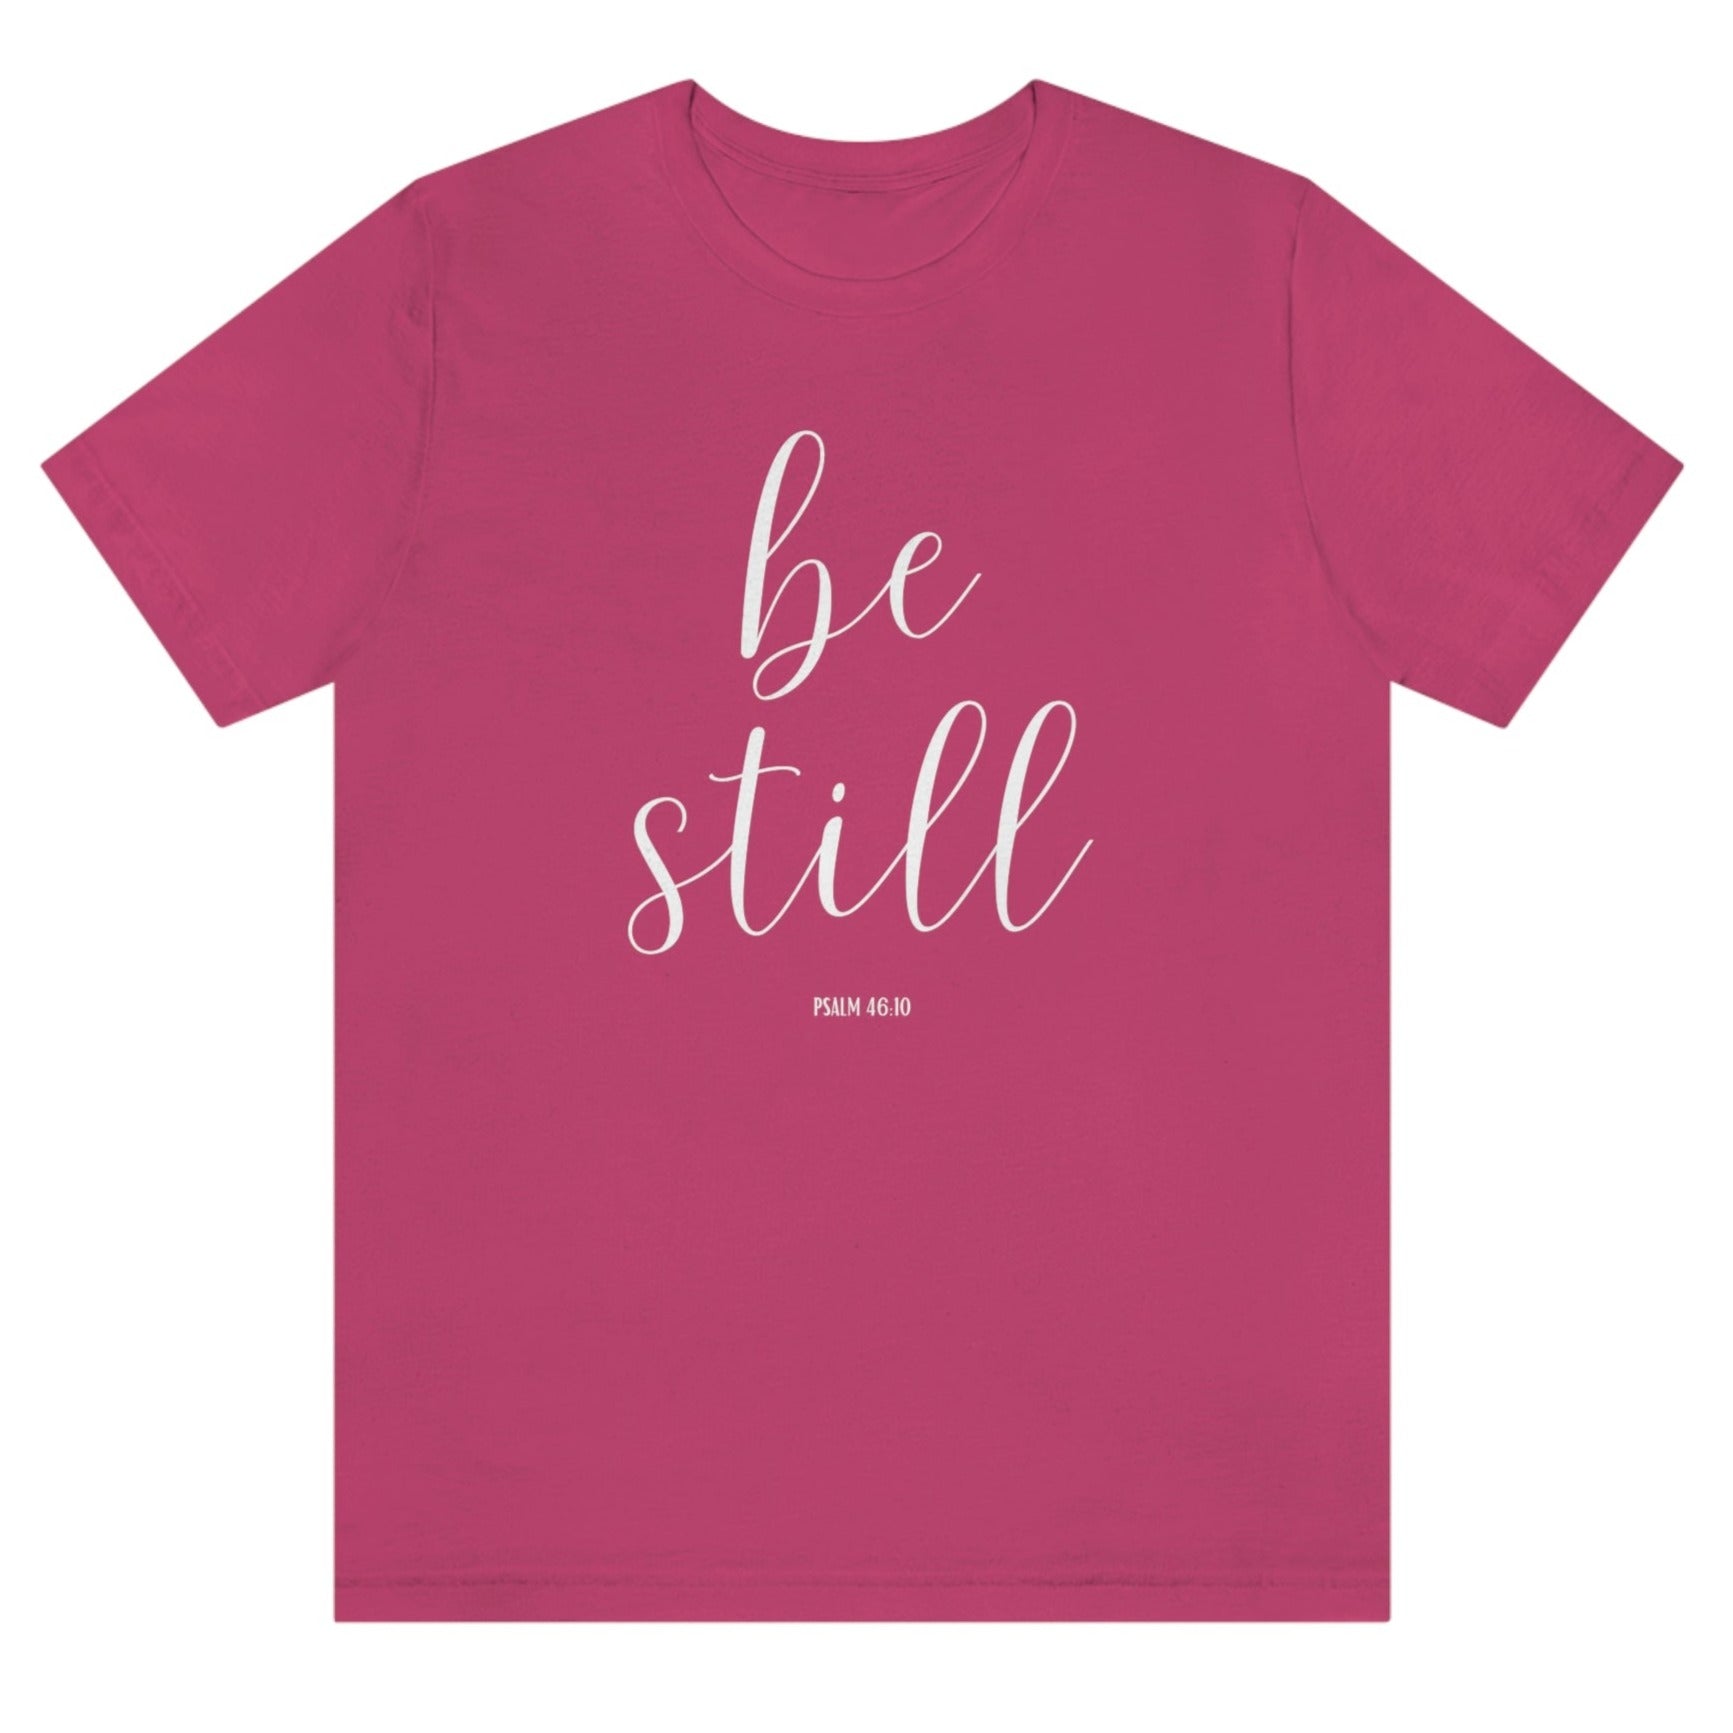 be-still-psalm-46-10-berry-t-shirt-womens-christian-inspiring